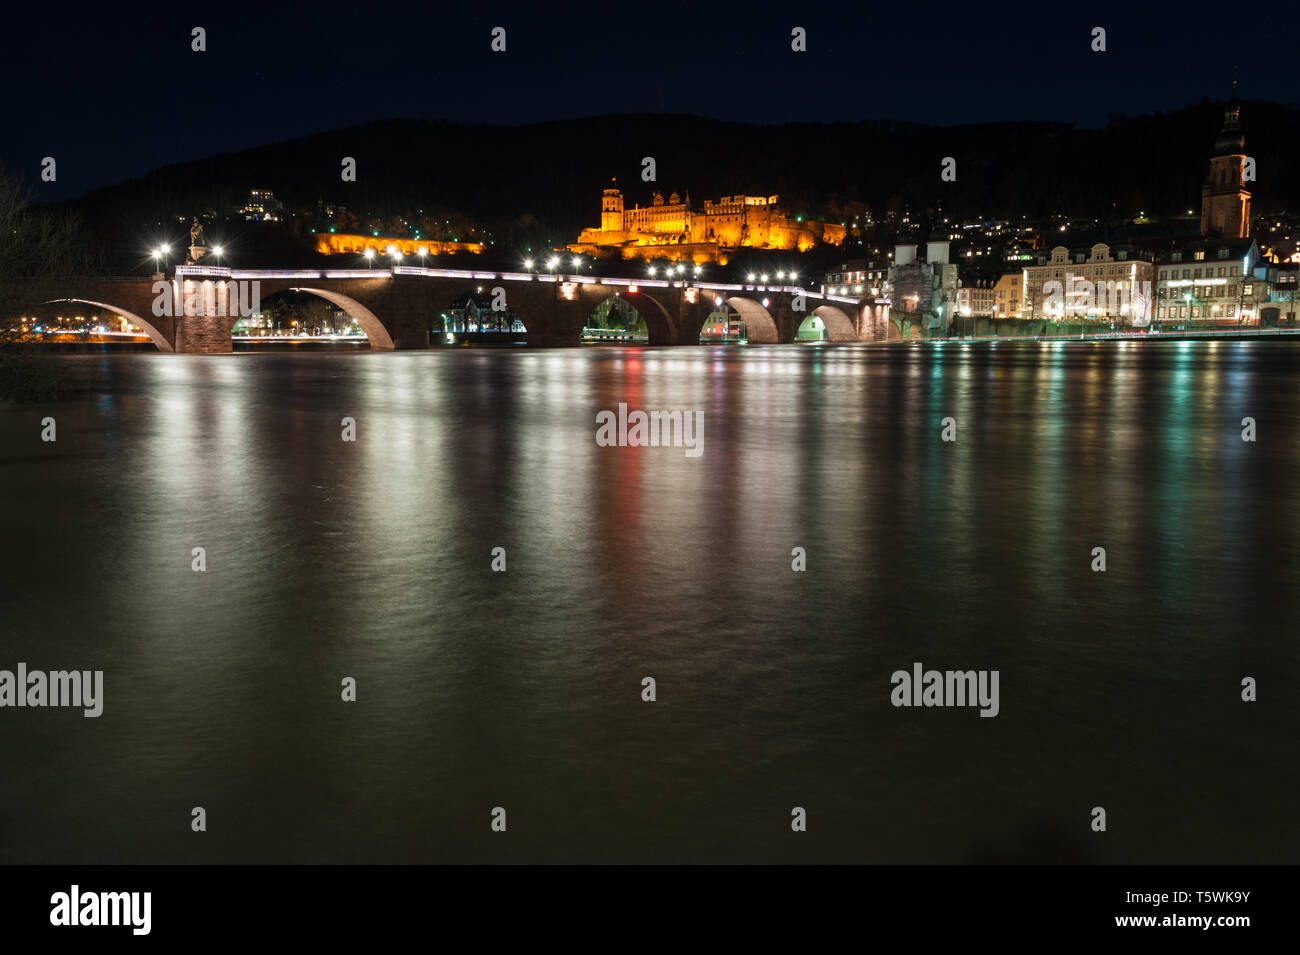 Heidelbergs castello illuminato di notte con la città vecchia e il ponte sul fiume Neckar in primo piano cattura mystic riflessi di luci della città Foto Stock